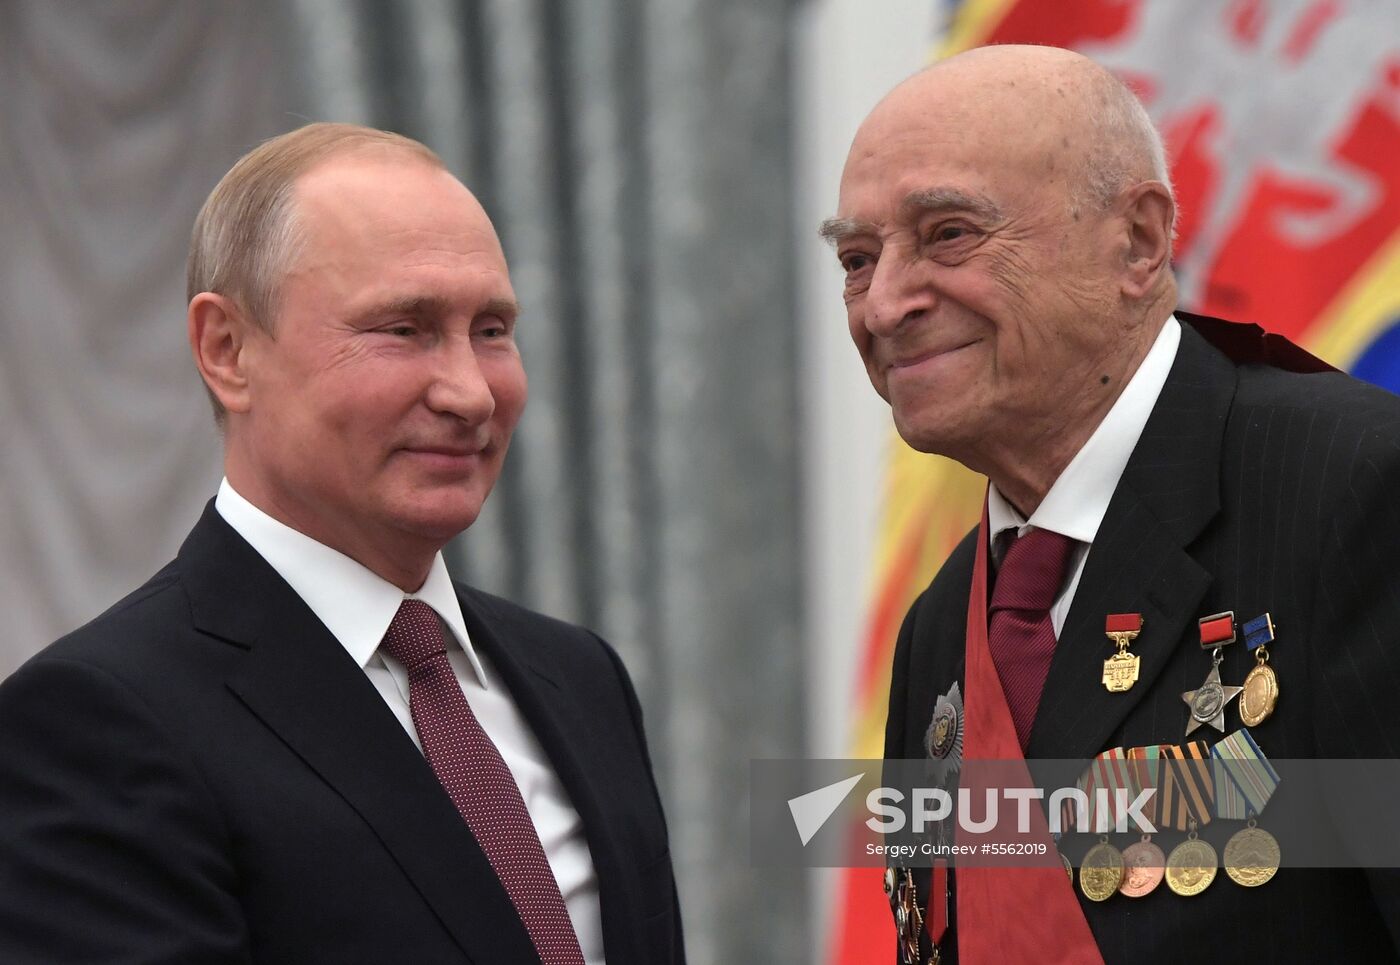 Vladimir Putin presents state prizes in Kremlin